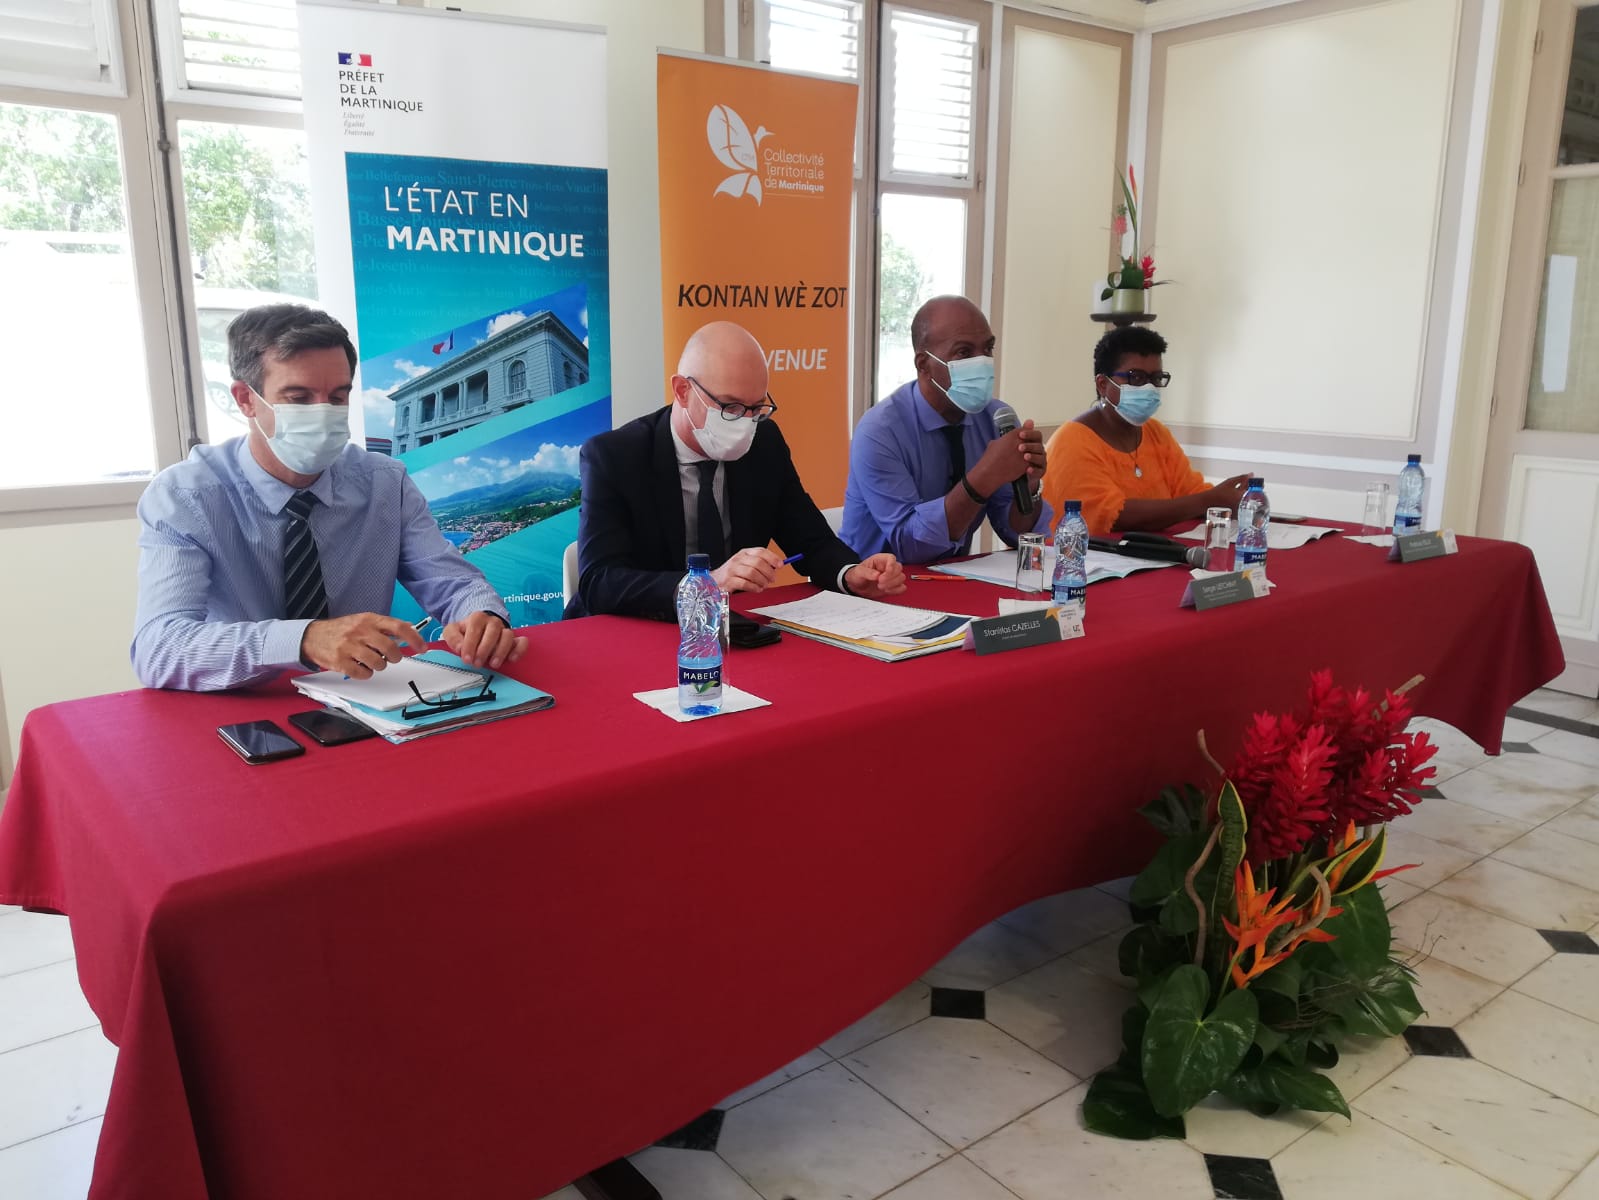     La Martinique se prépare à recevoir la conférence des Régions Ultrapériphérique de l'Europe

